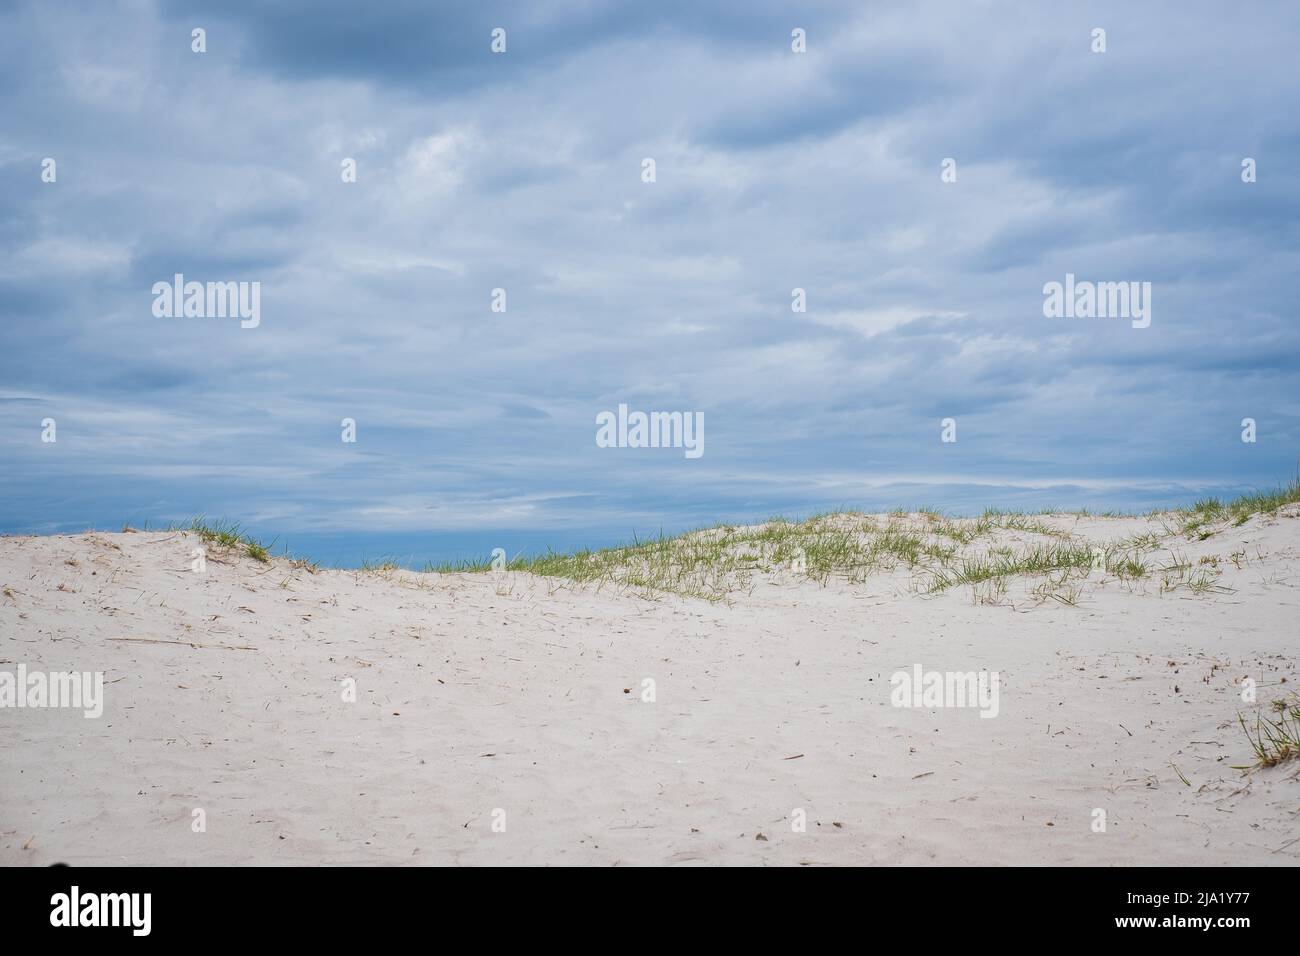 Leere Sanddünen und blauer Himmel. Strand Hintergrund. Entspannende Landschaft mit natürlichem Licht. Stockfoto